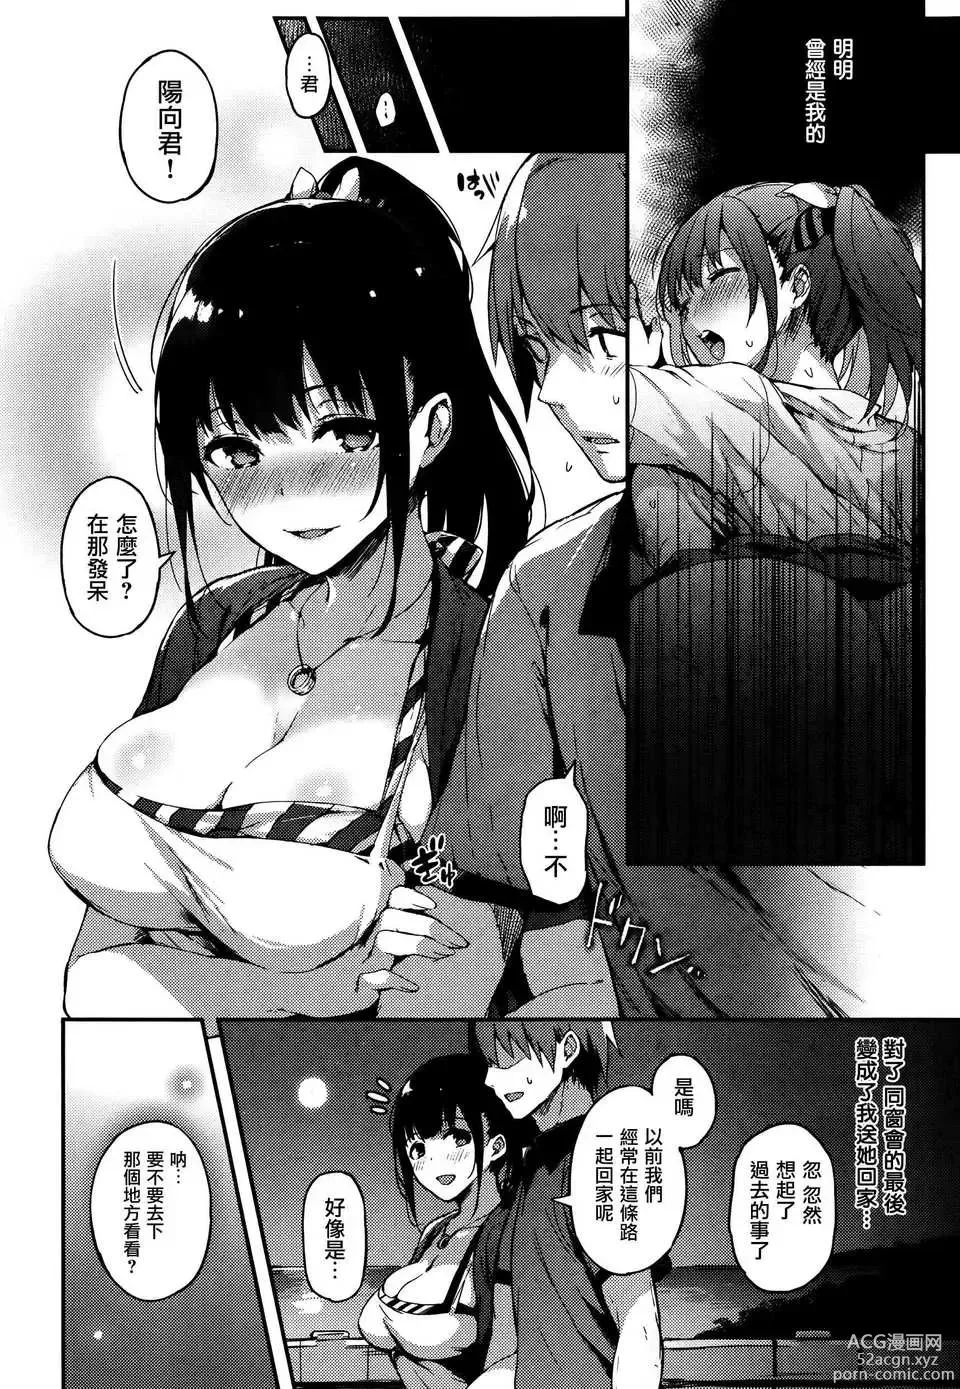 Page 4 of manga Sakumachisou